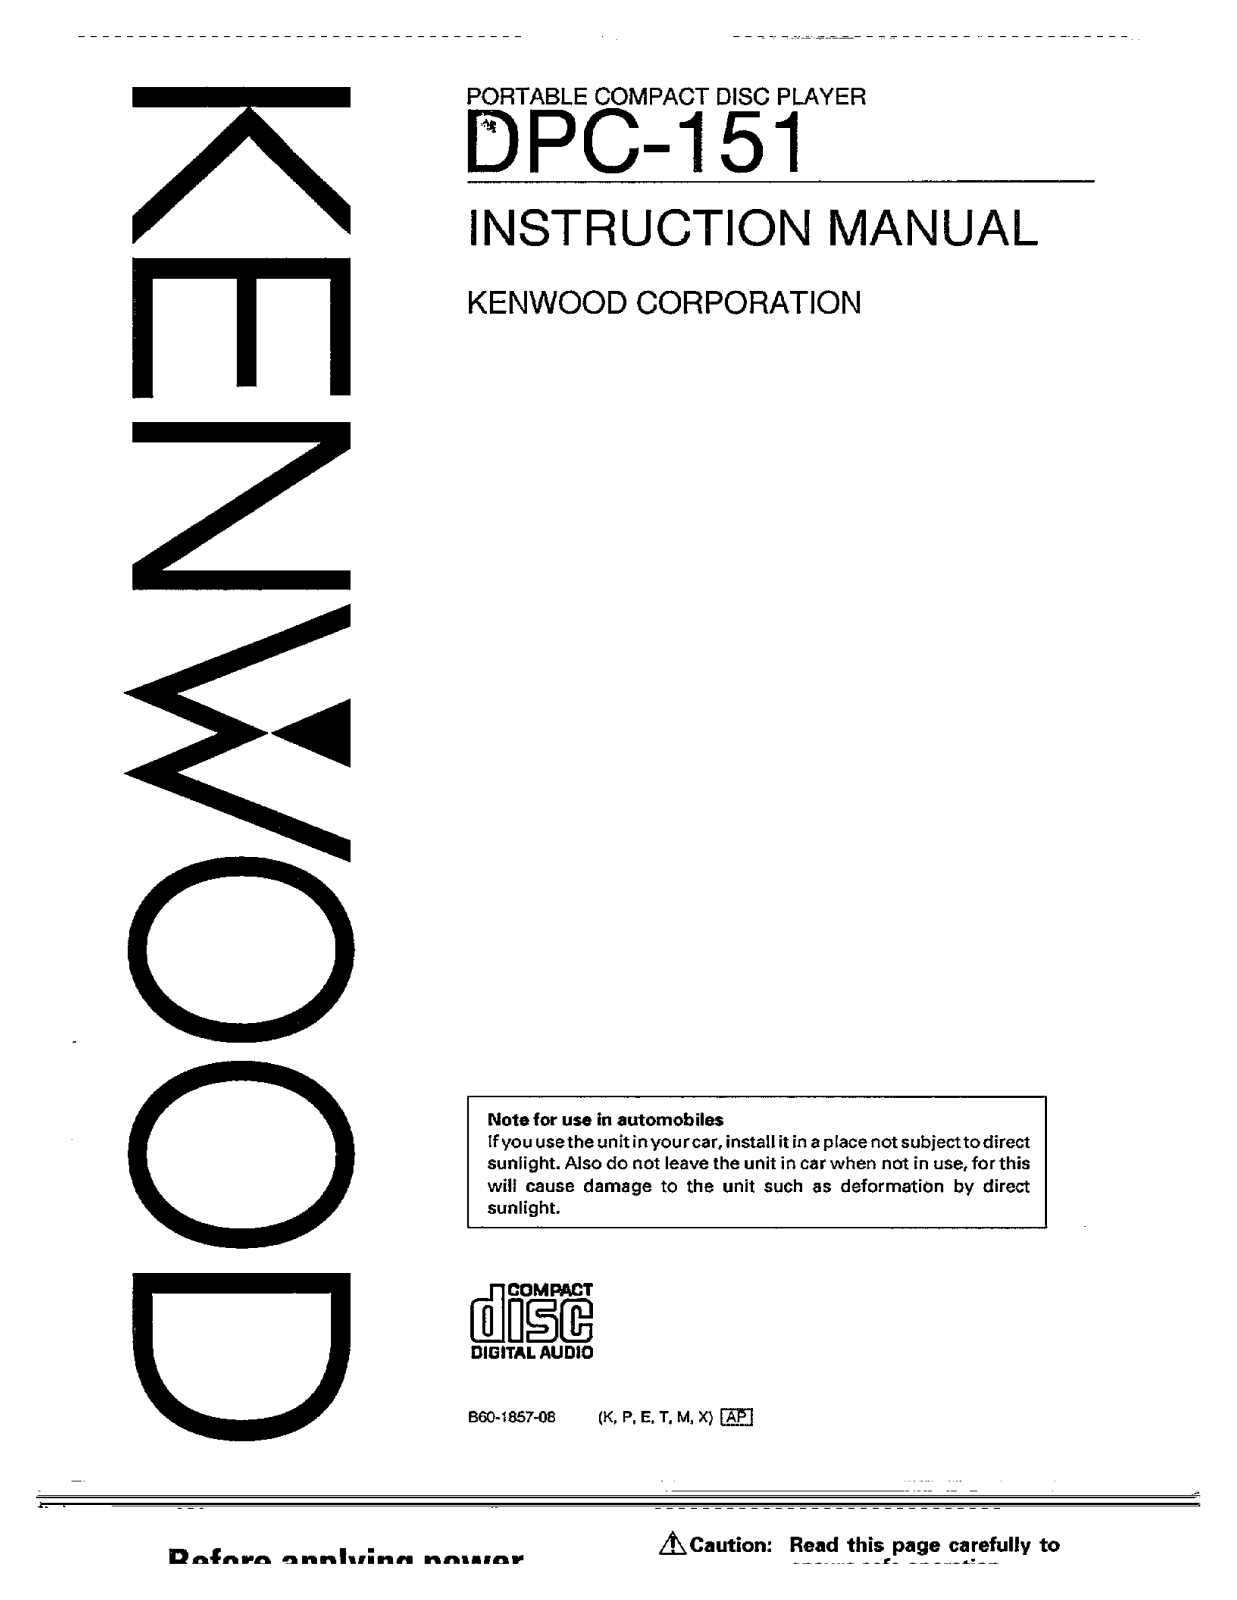 Kenwood DPC-151 Owner's Manual